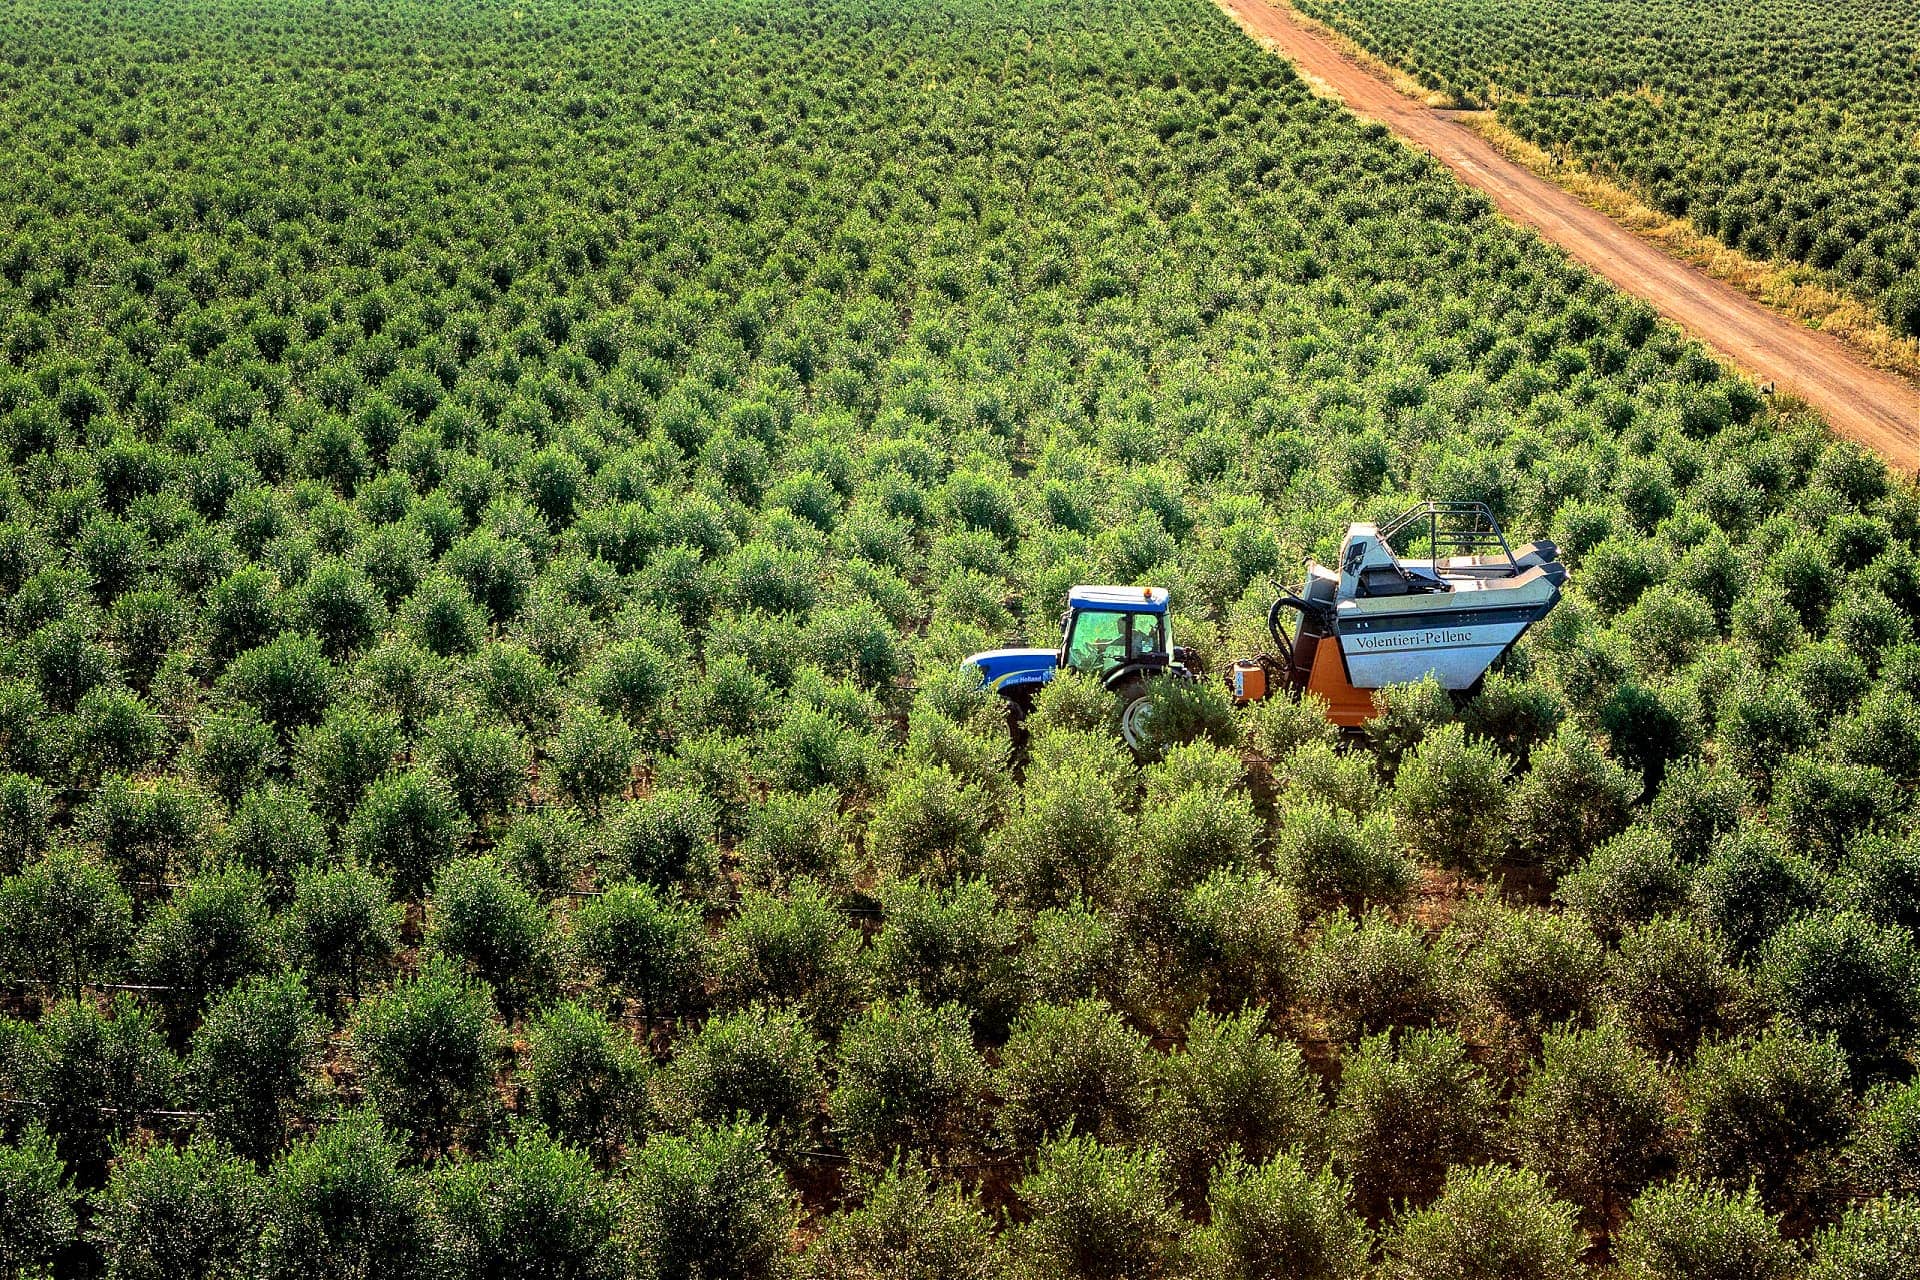 europa-perfiles-la-mejor-producción-de-aceites-de-oliva-productores-detrás-de-san-giuliano-perseguir-la-calidad-a través-de-la-innovación-olive-oil-times